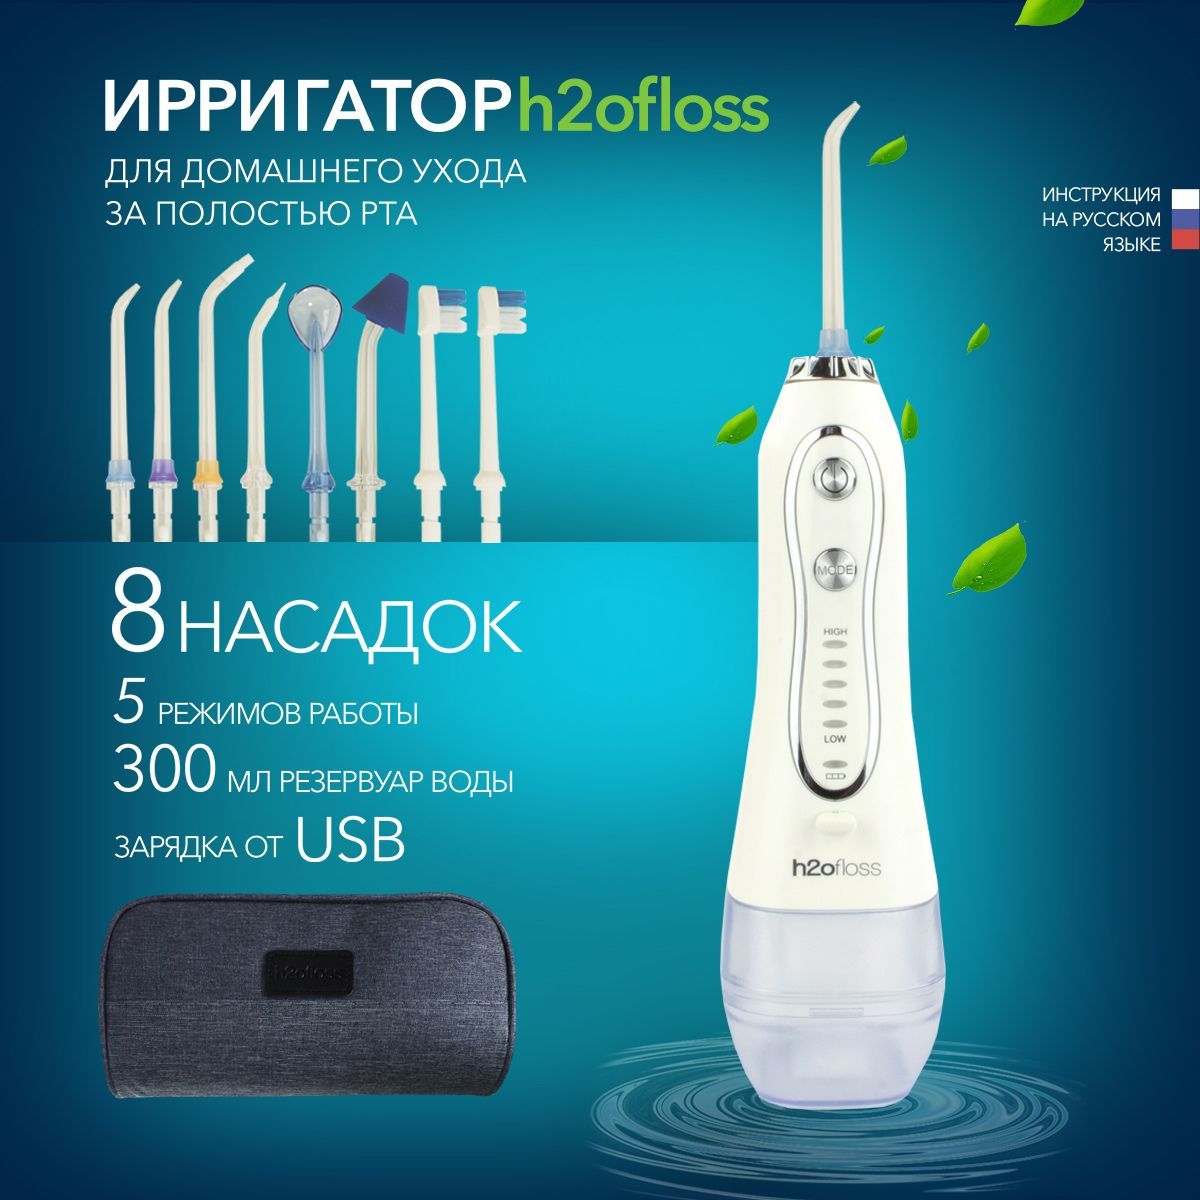 Ирригатор H2oFloss H2O белый, купить в Москве, цены в интернет-магазинах на Мегамаркет